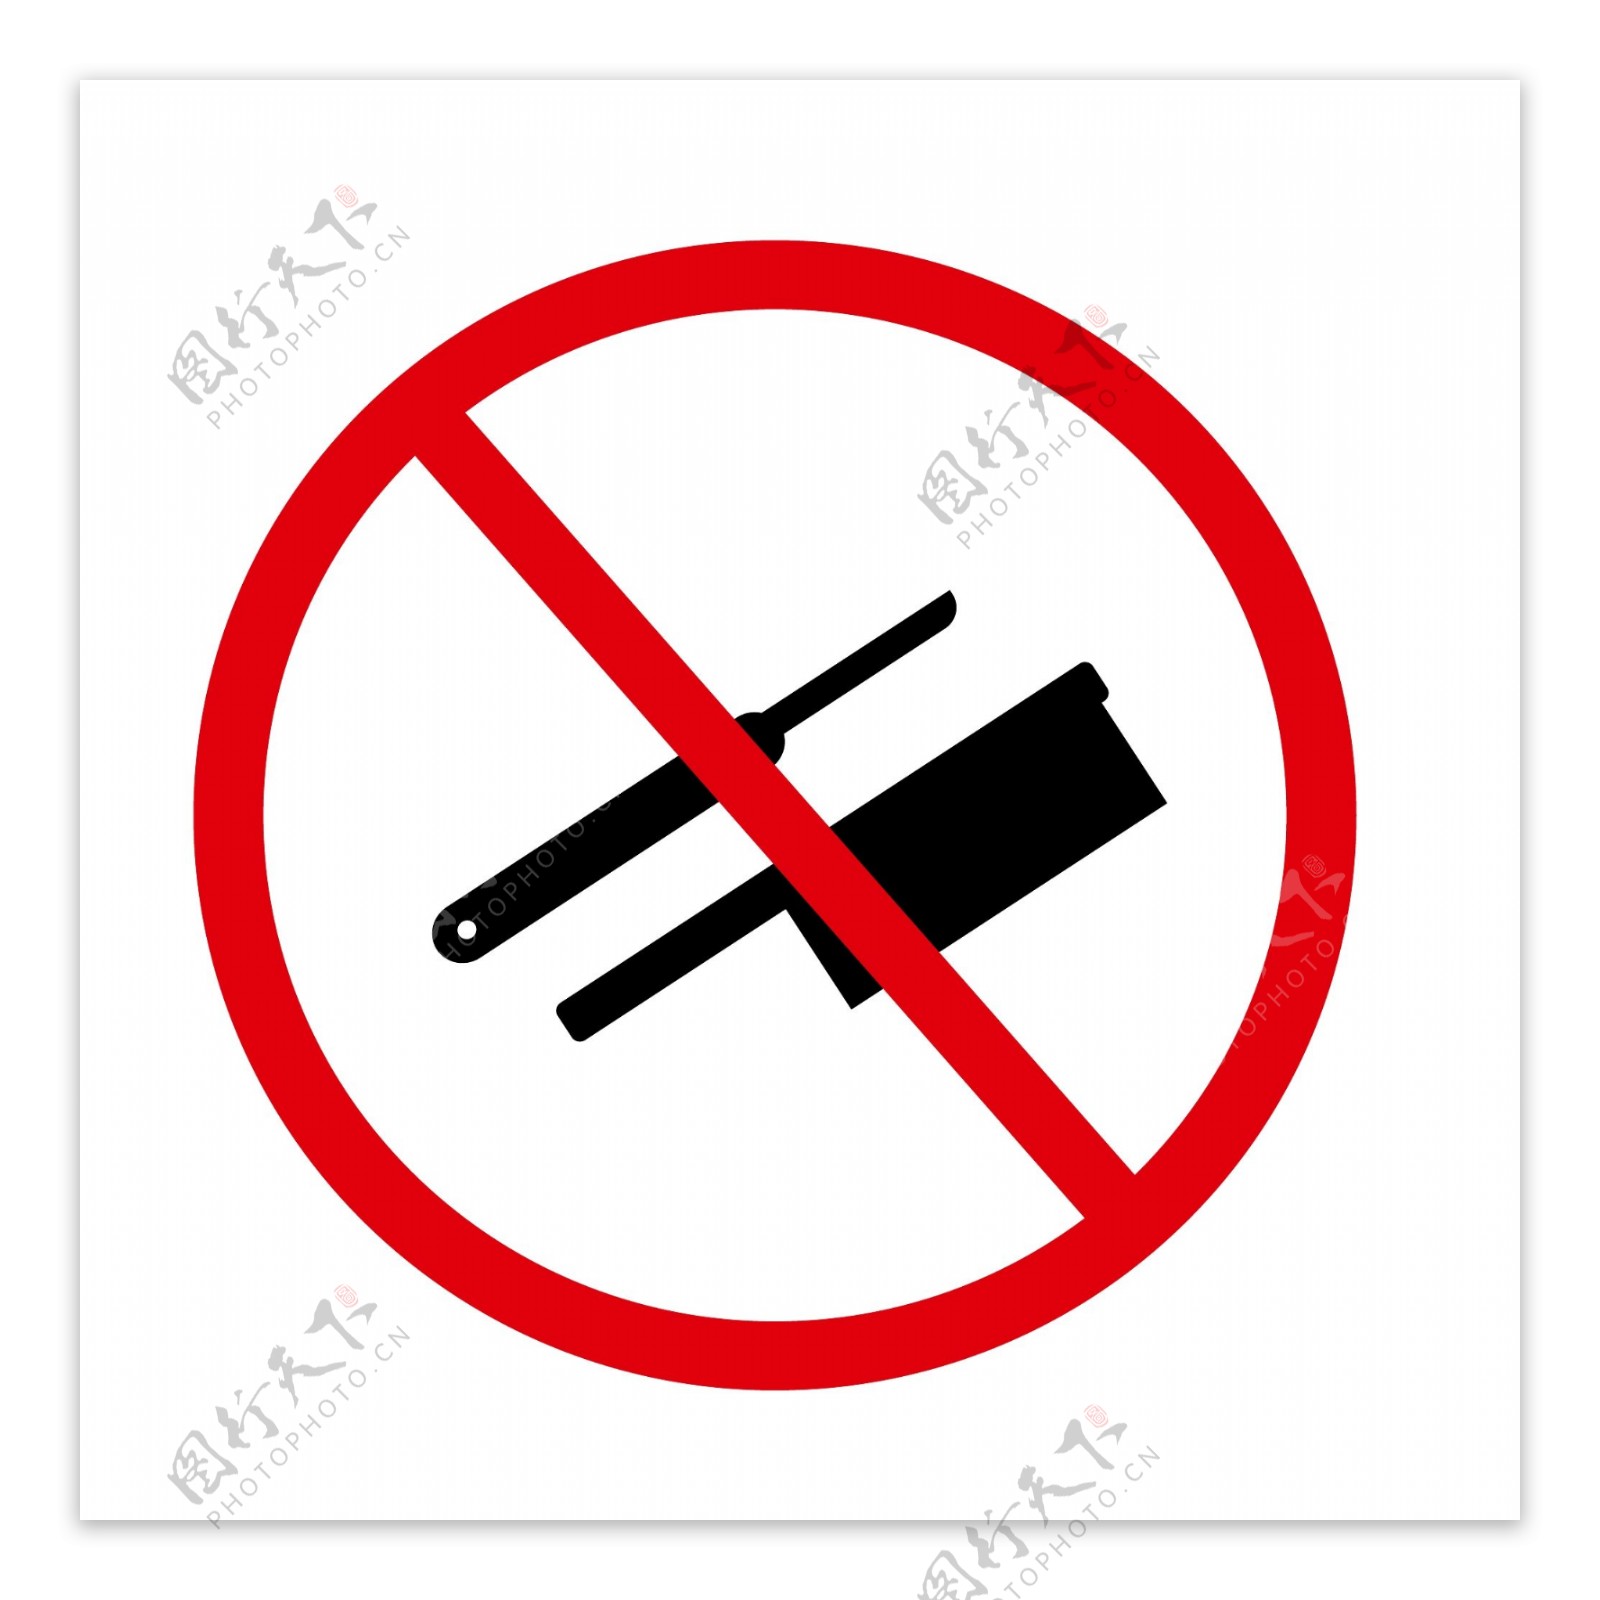 禁止携带管制刀具